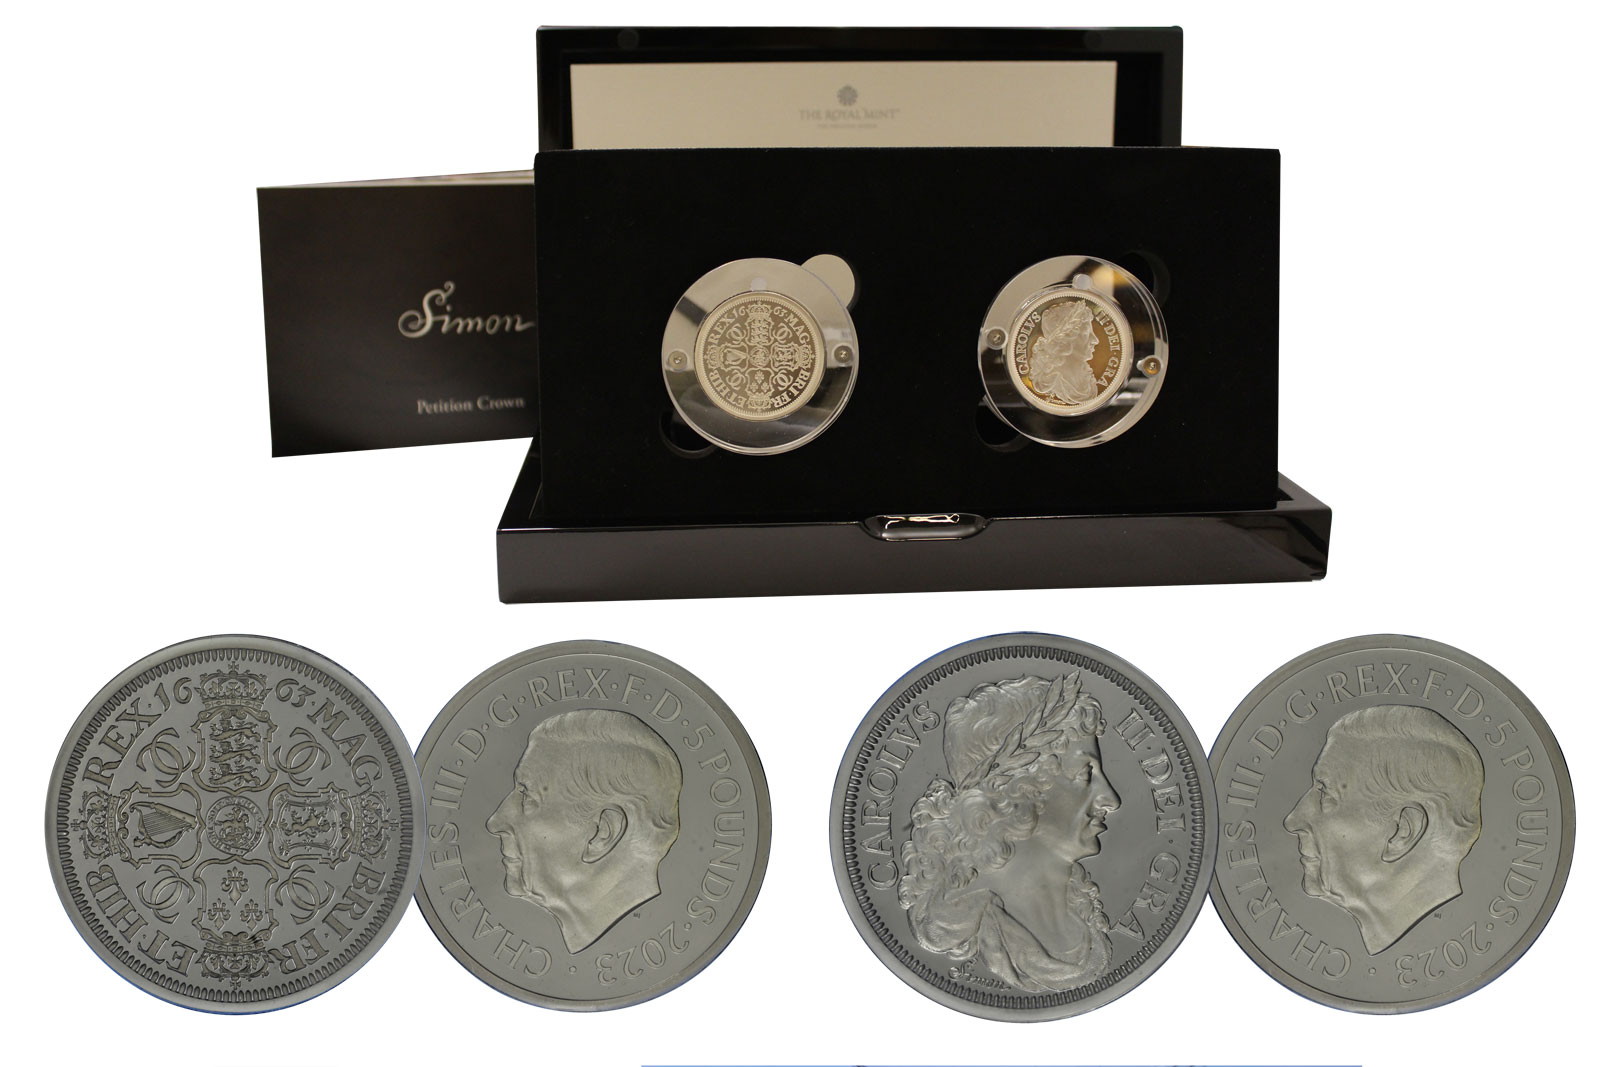 "Petition Crown di T.Simon" - set di 2 monete da 5 sterline gr. 62,42 in ag. 999/000 - Tiratura 3250 pz 